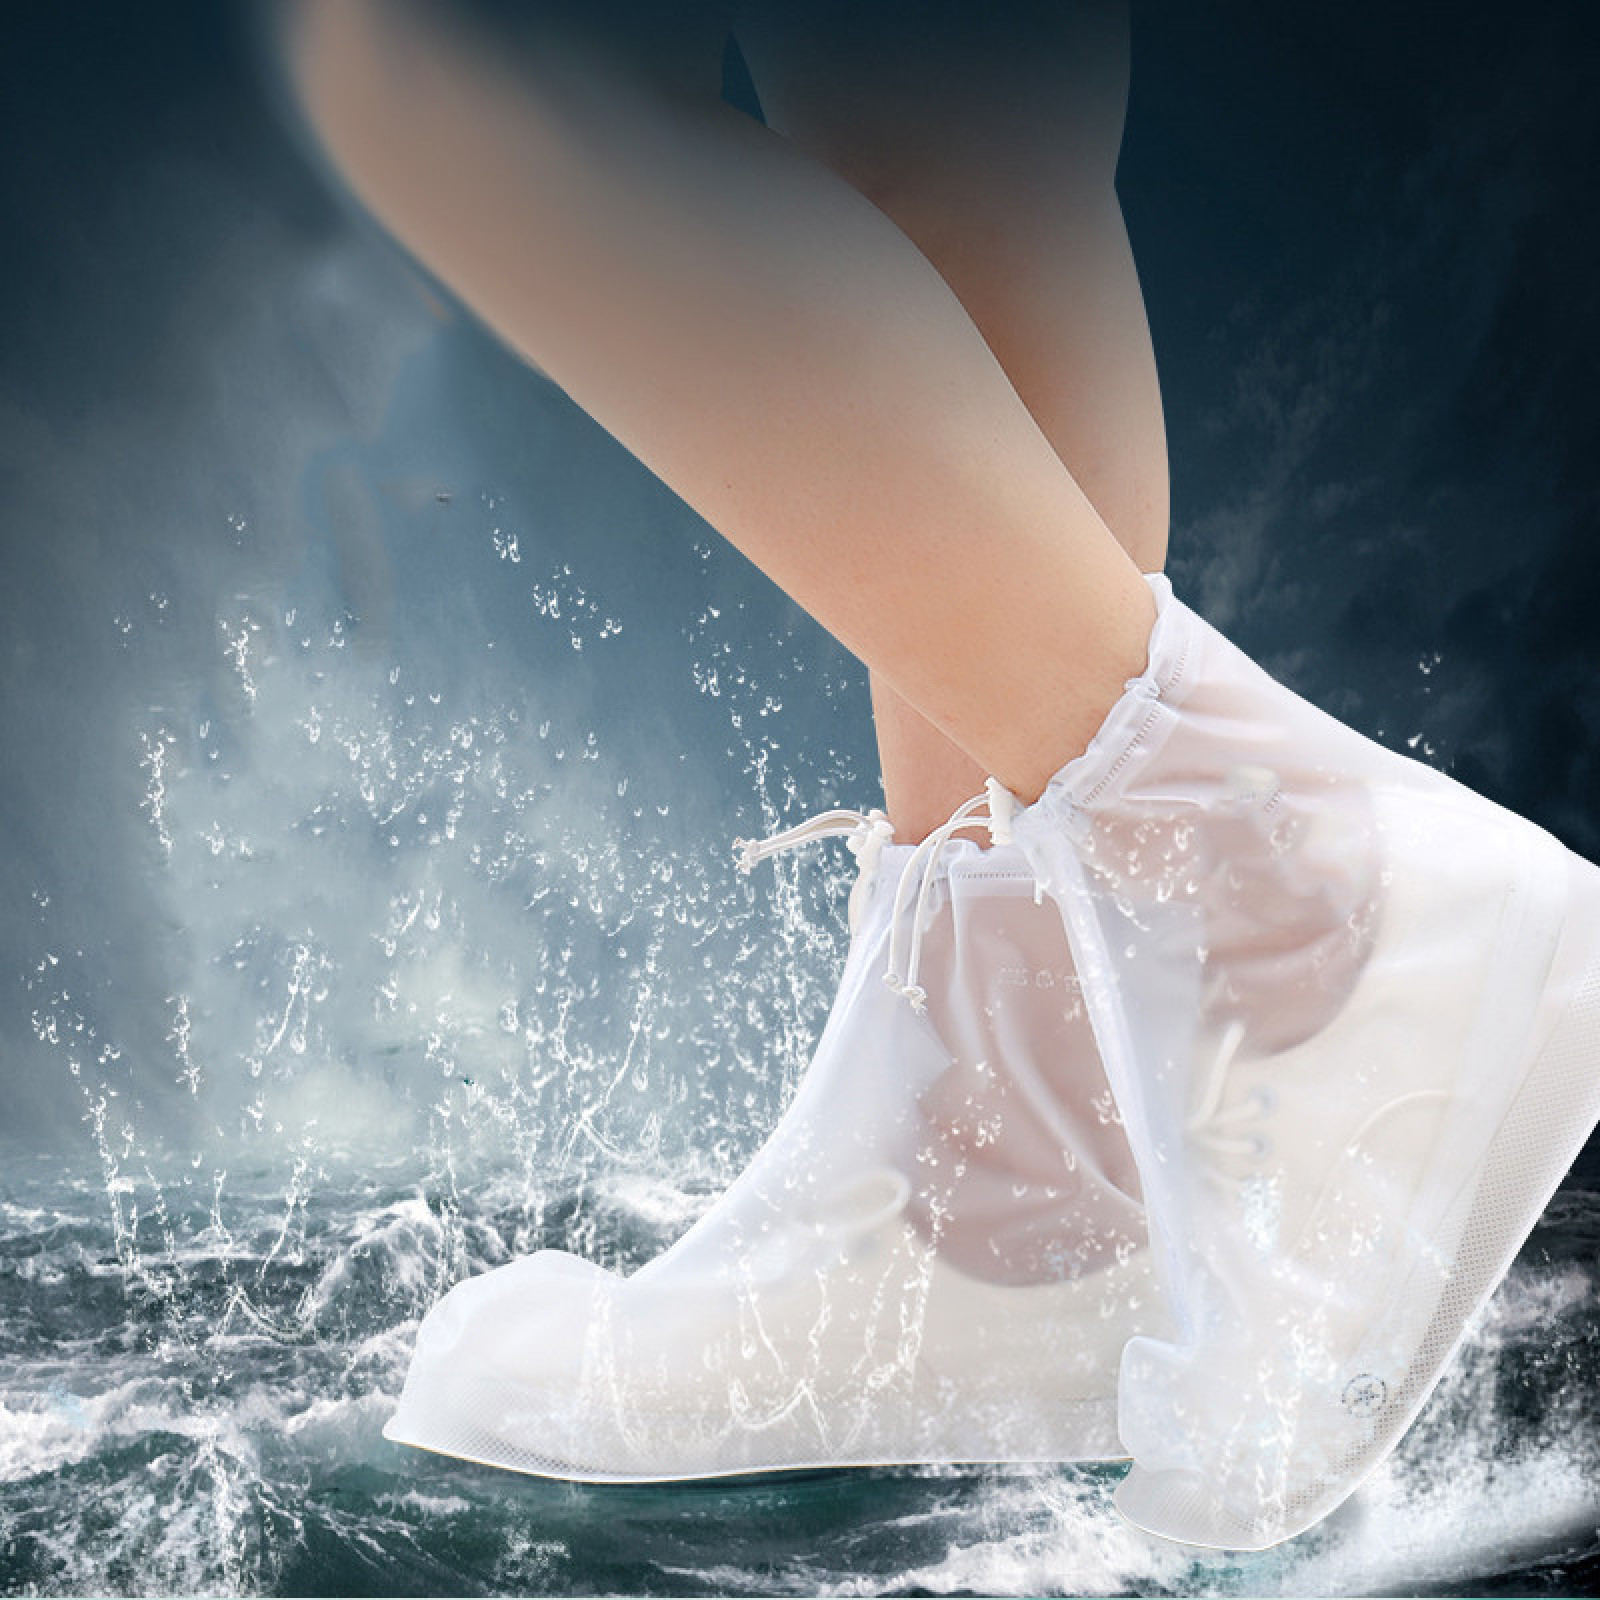 Дождевики для обуви, бахилы от дождя, чехлы для обуви Белые Размер S 183556